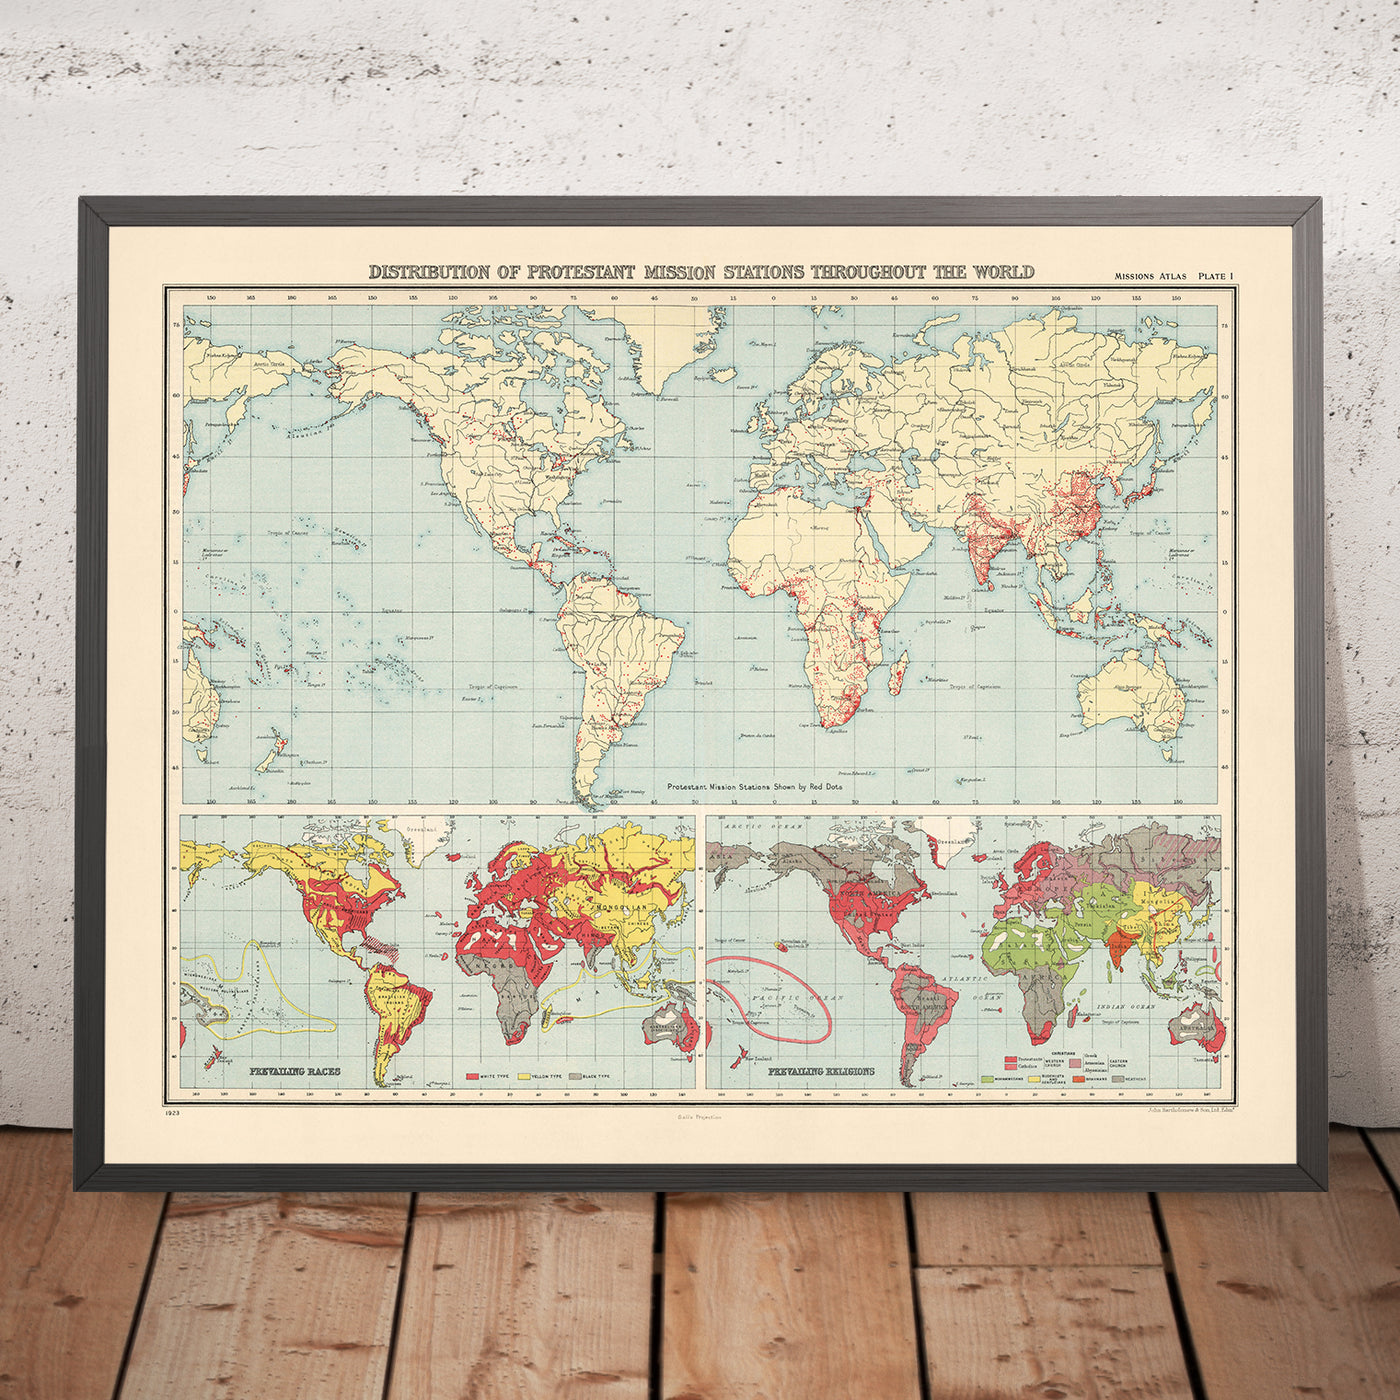 Distribución de mapas del Viejo Mundo de las estaciones misioneras protestantes, 1923: alcance global, diseño temático, proyección Gall